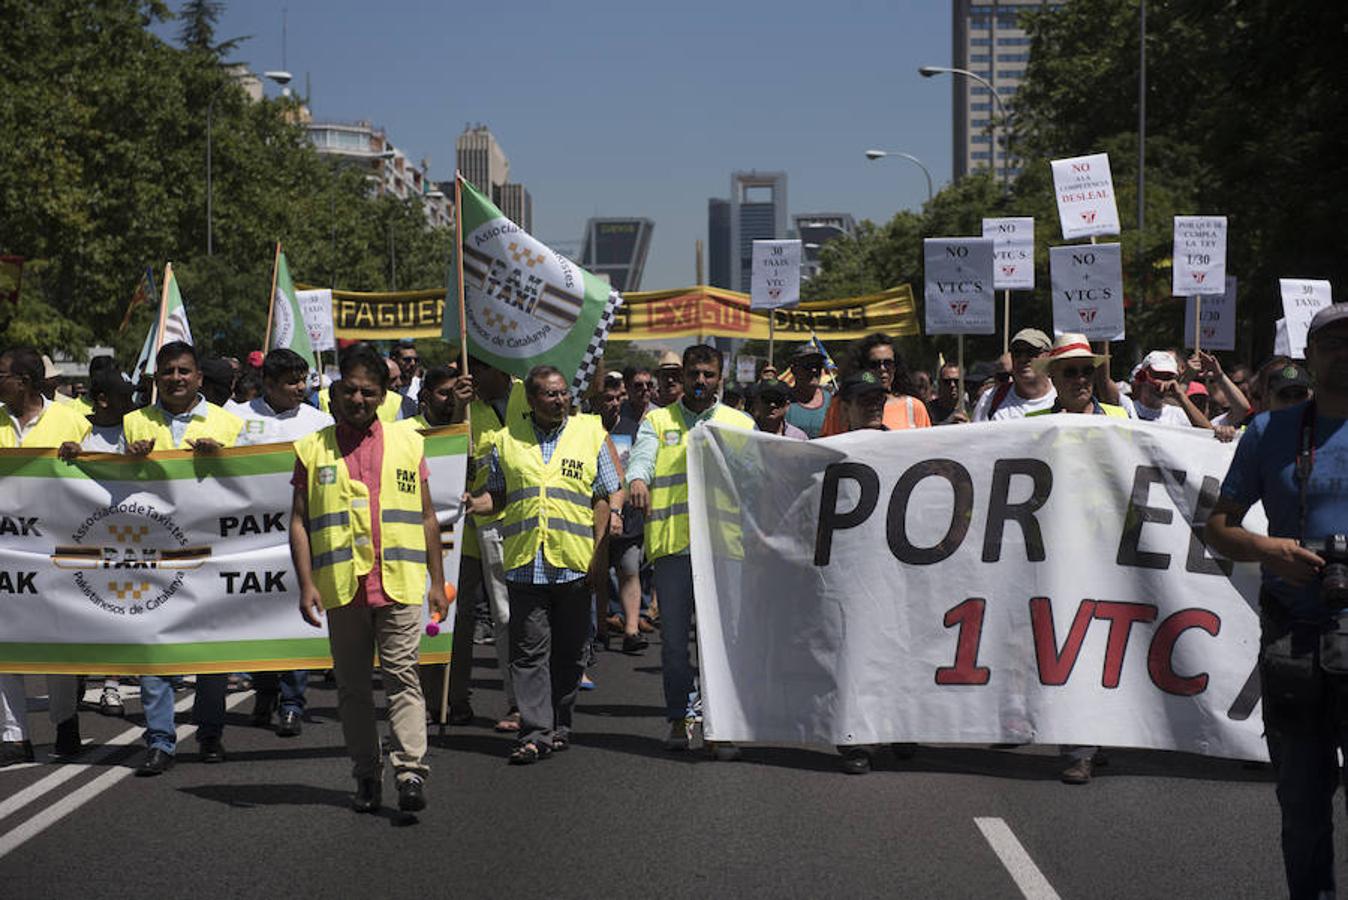 Cabecera de la manifestación de los taxistas en Madrid